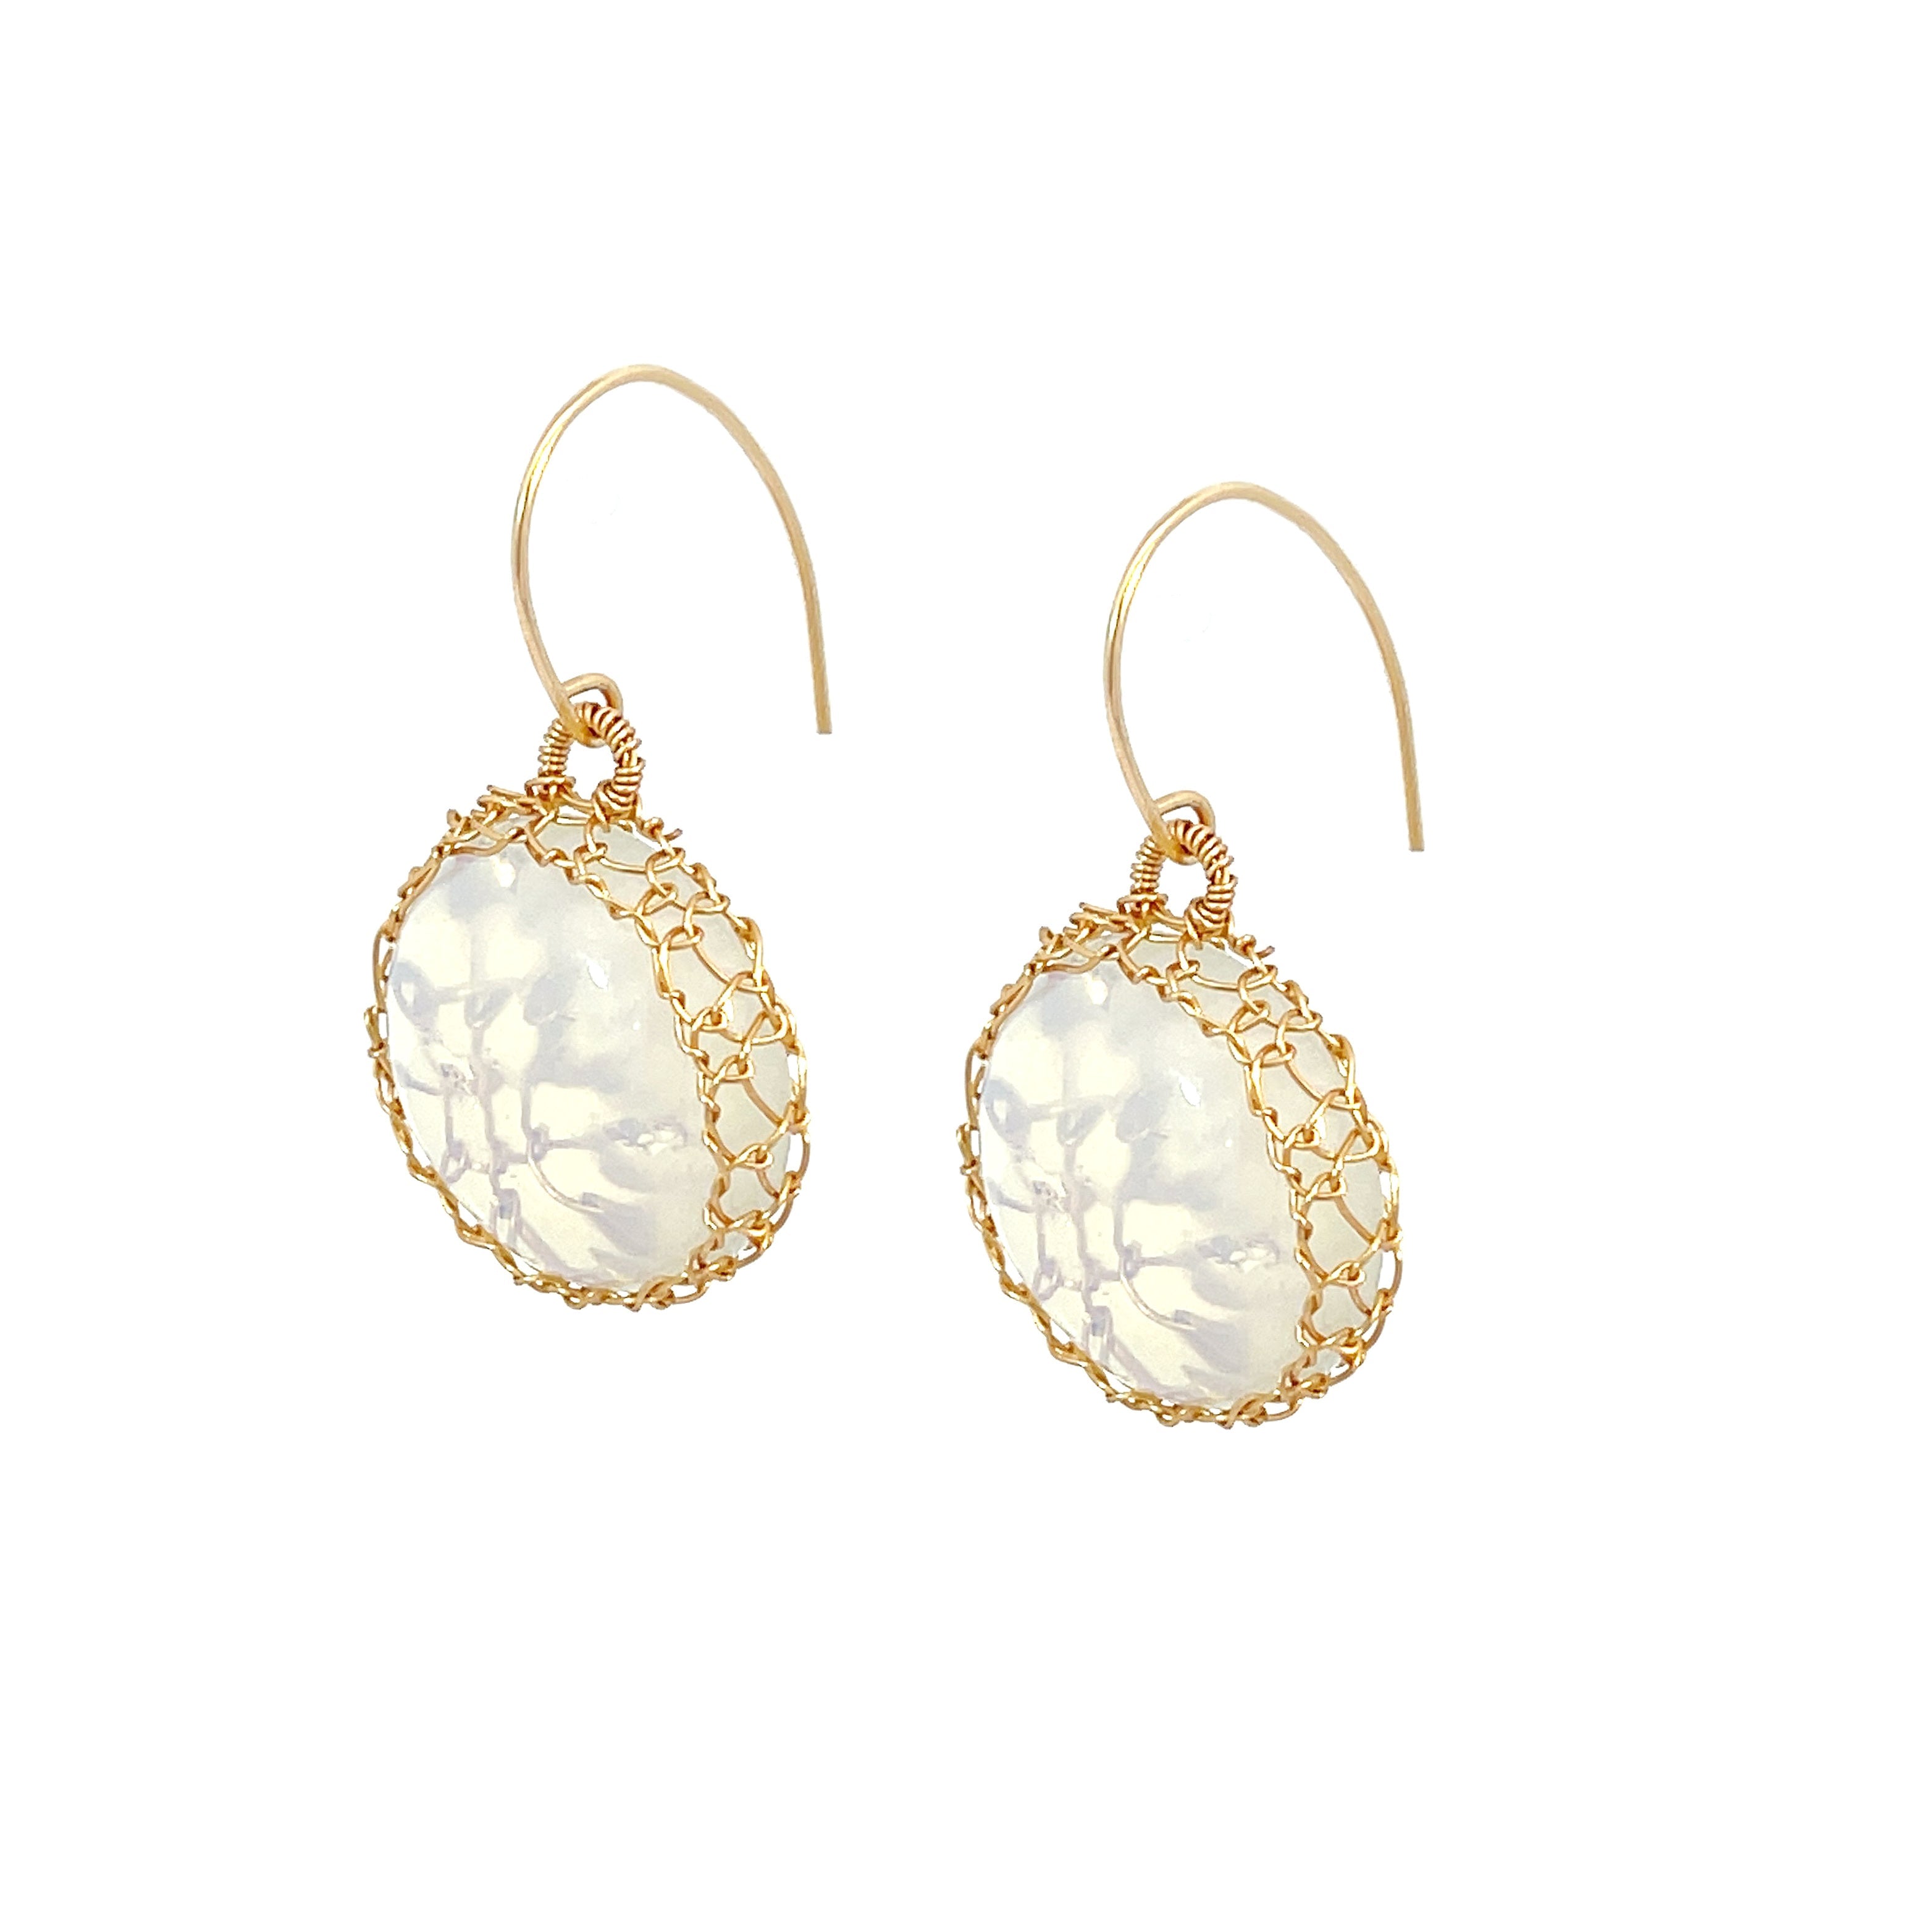 Gosia Orlowska Small Opal Drop Earrings Online